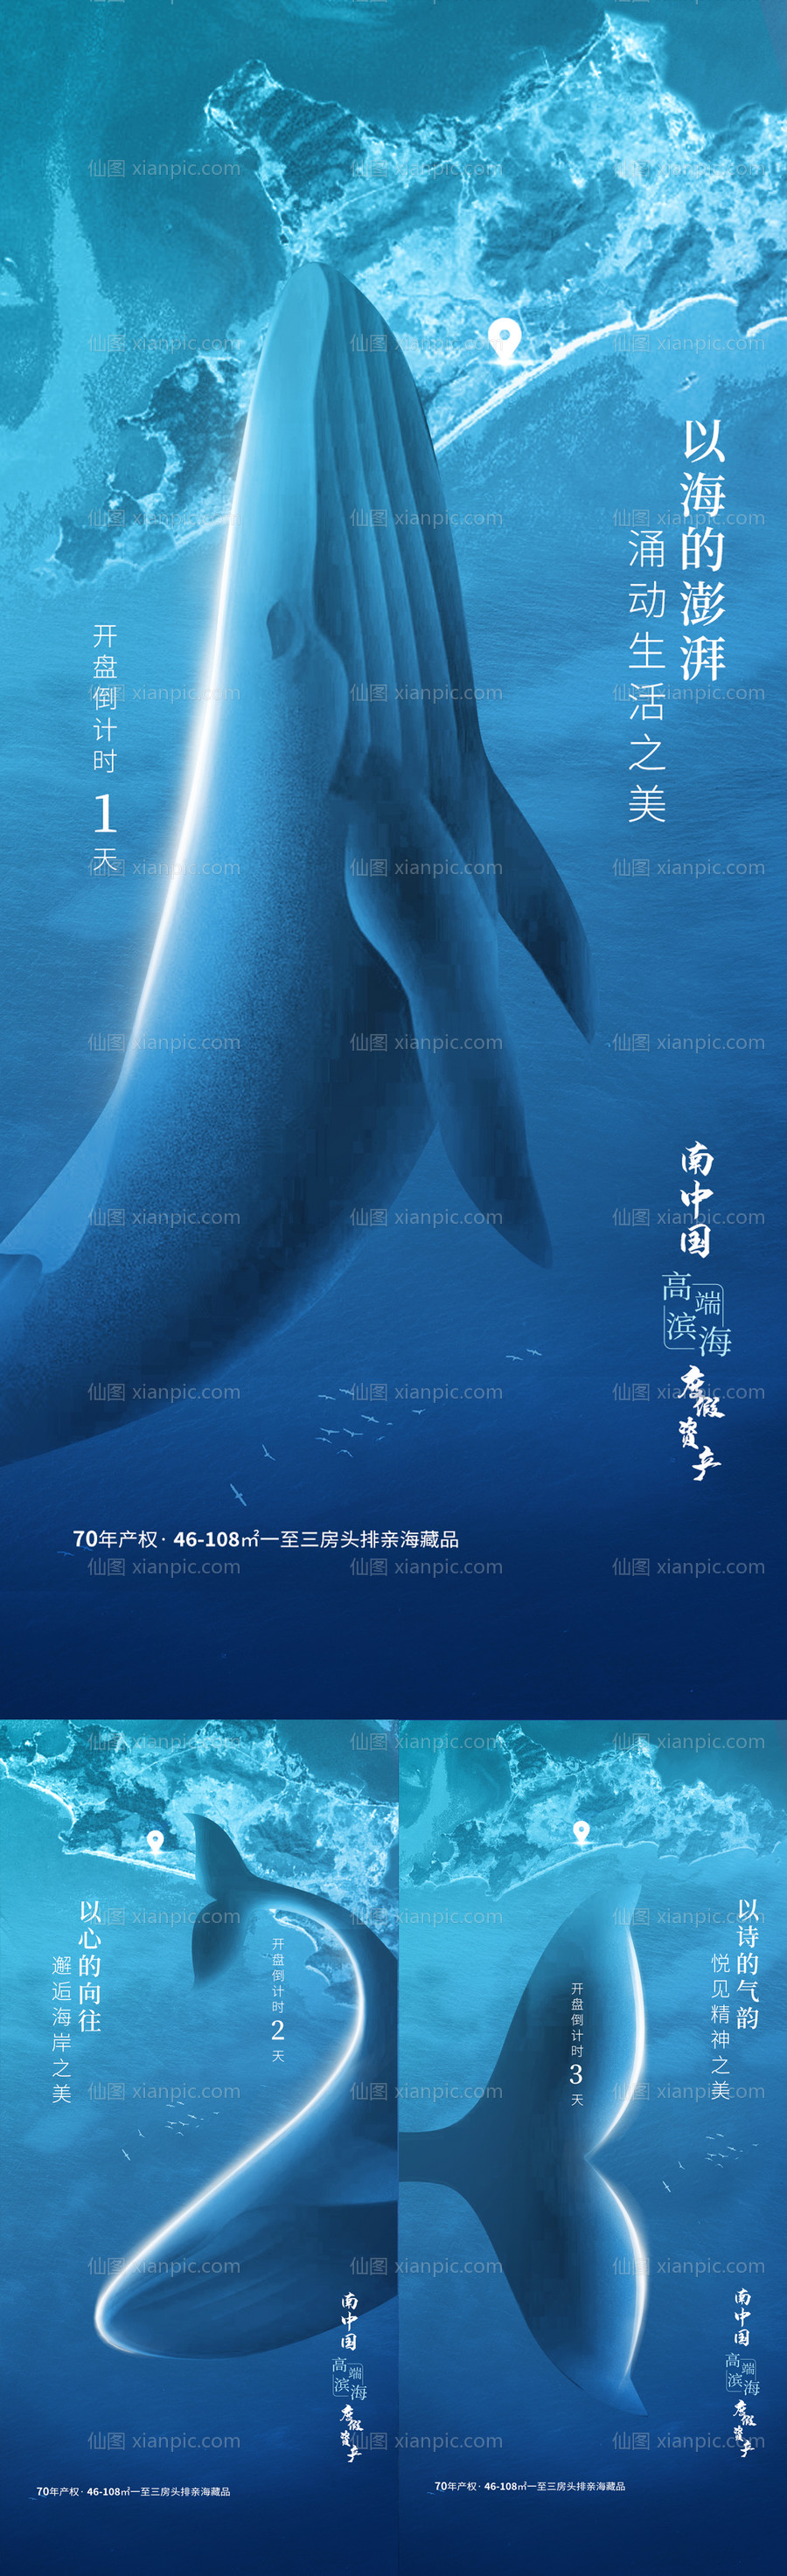 素材乐-蓝色海洋鲸鱼倒计时